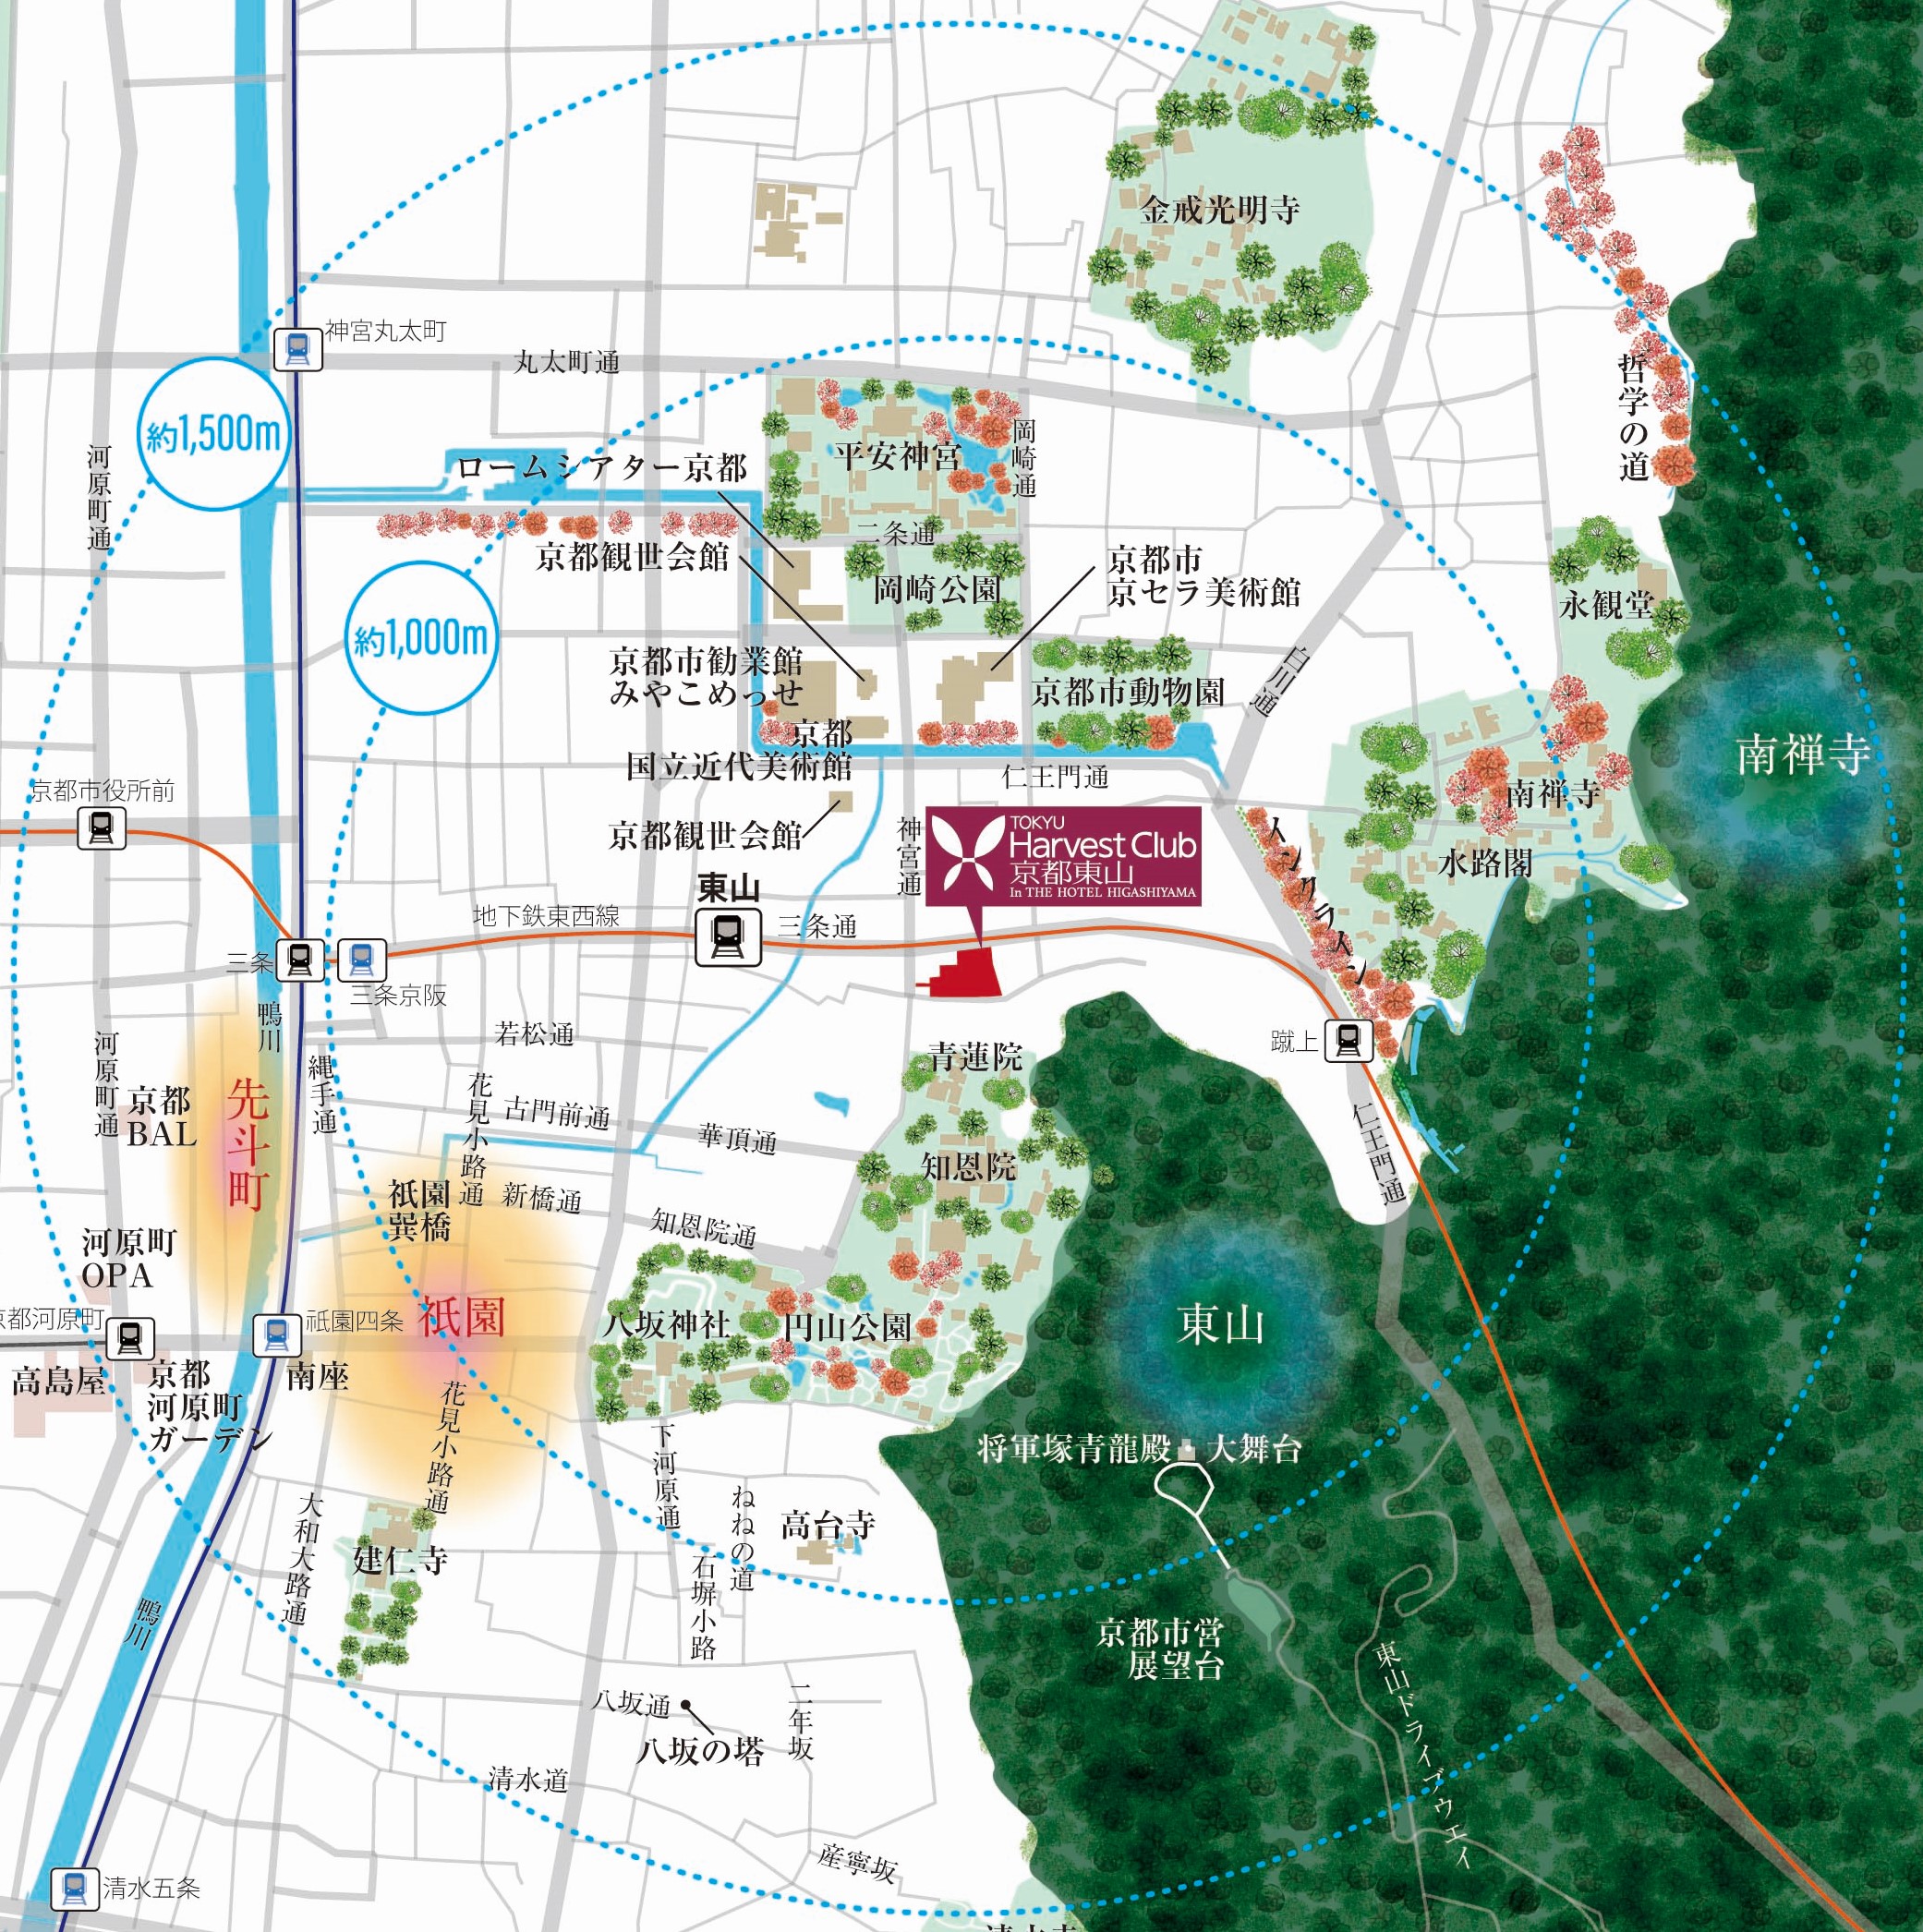 東急ハーヴェストクラブ京都東山 In THE HOTEL HIGASHIYAMA地図